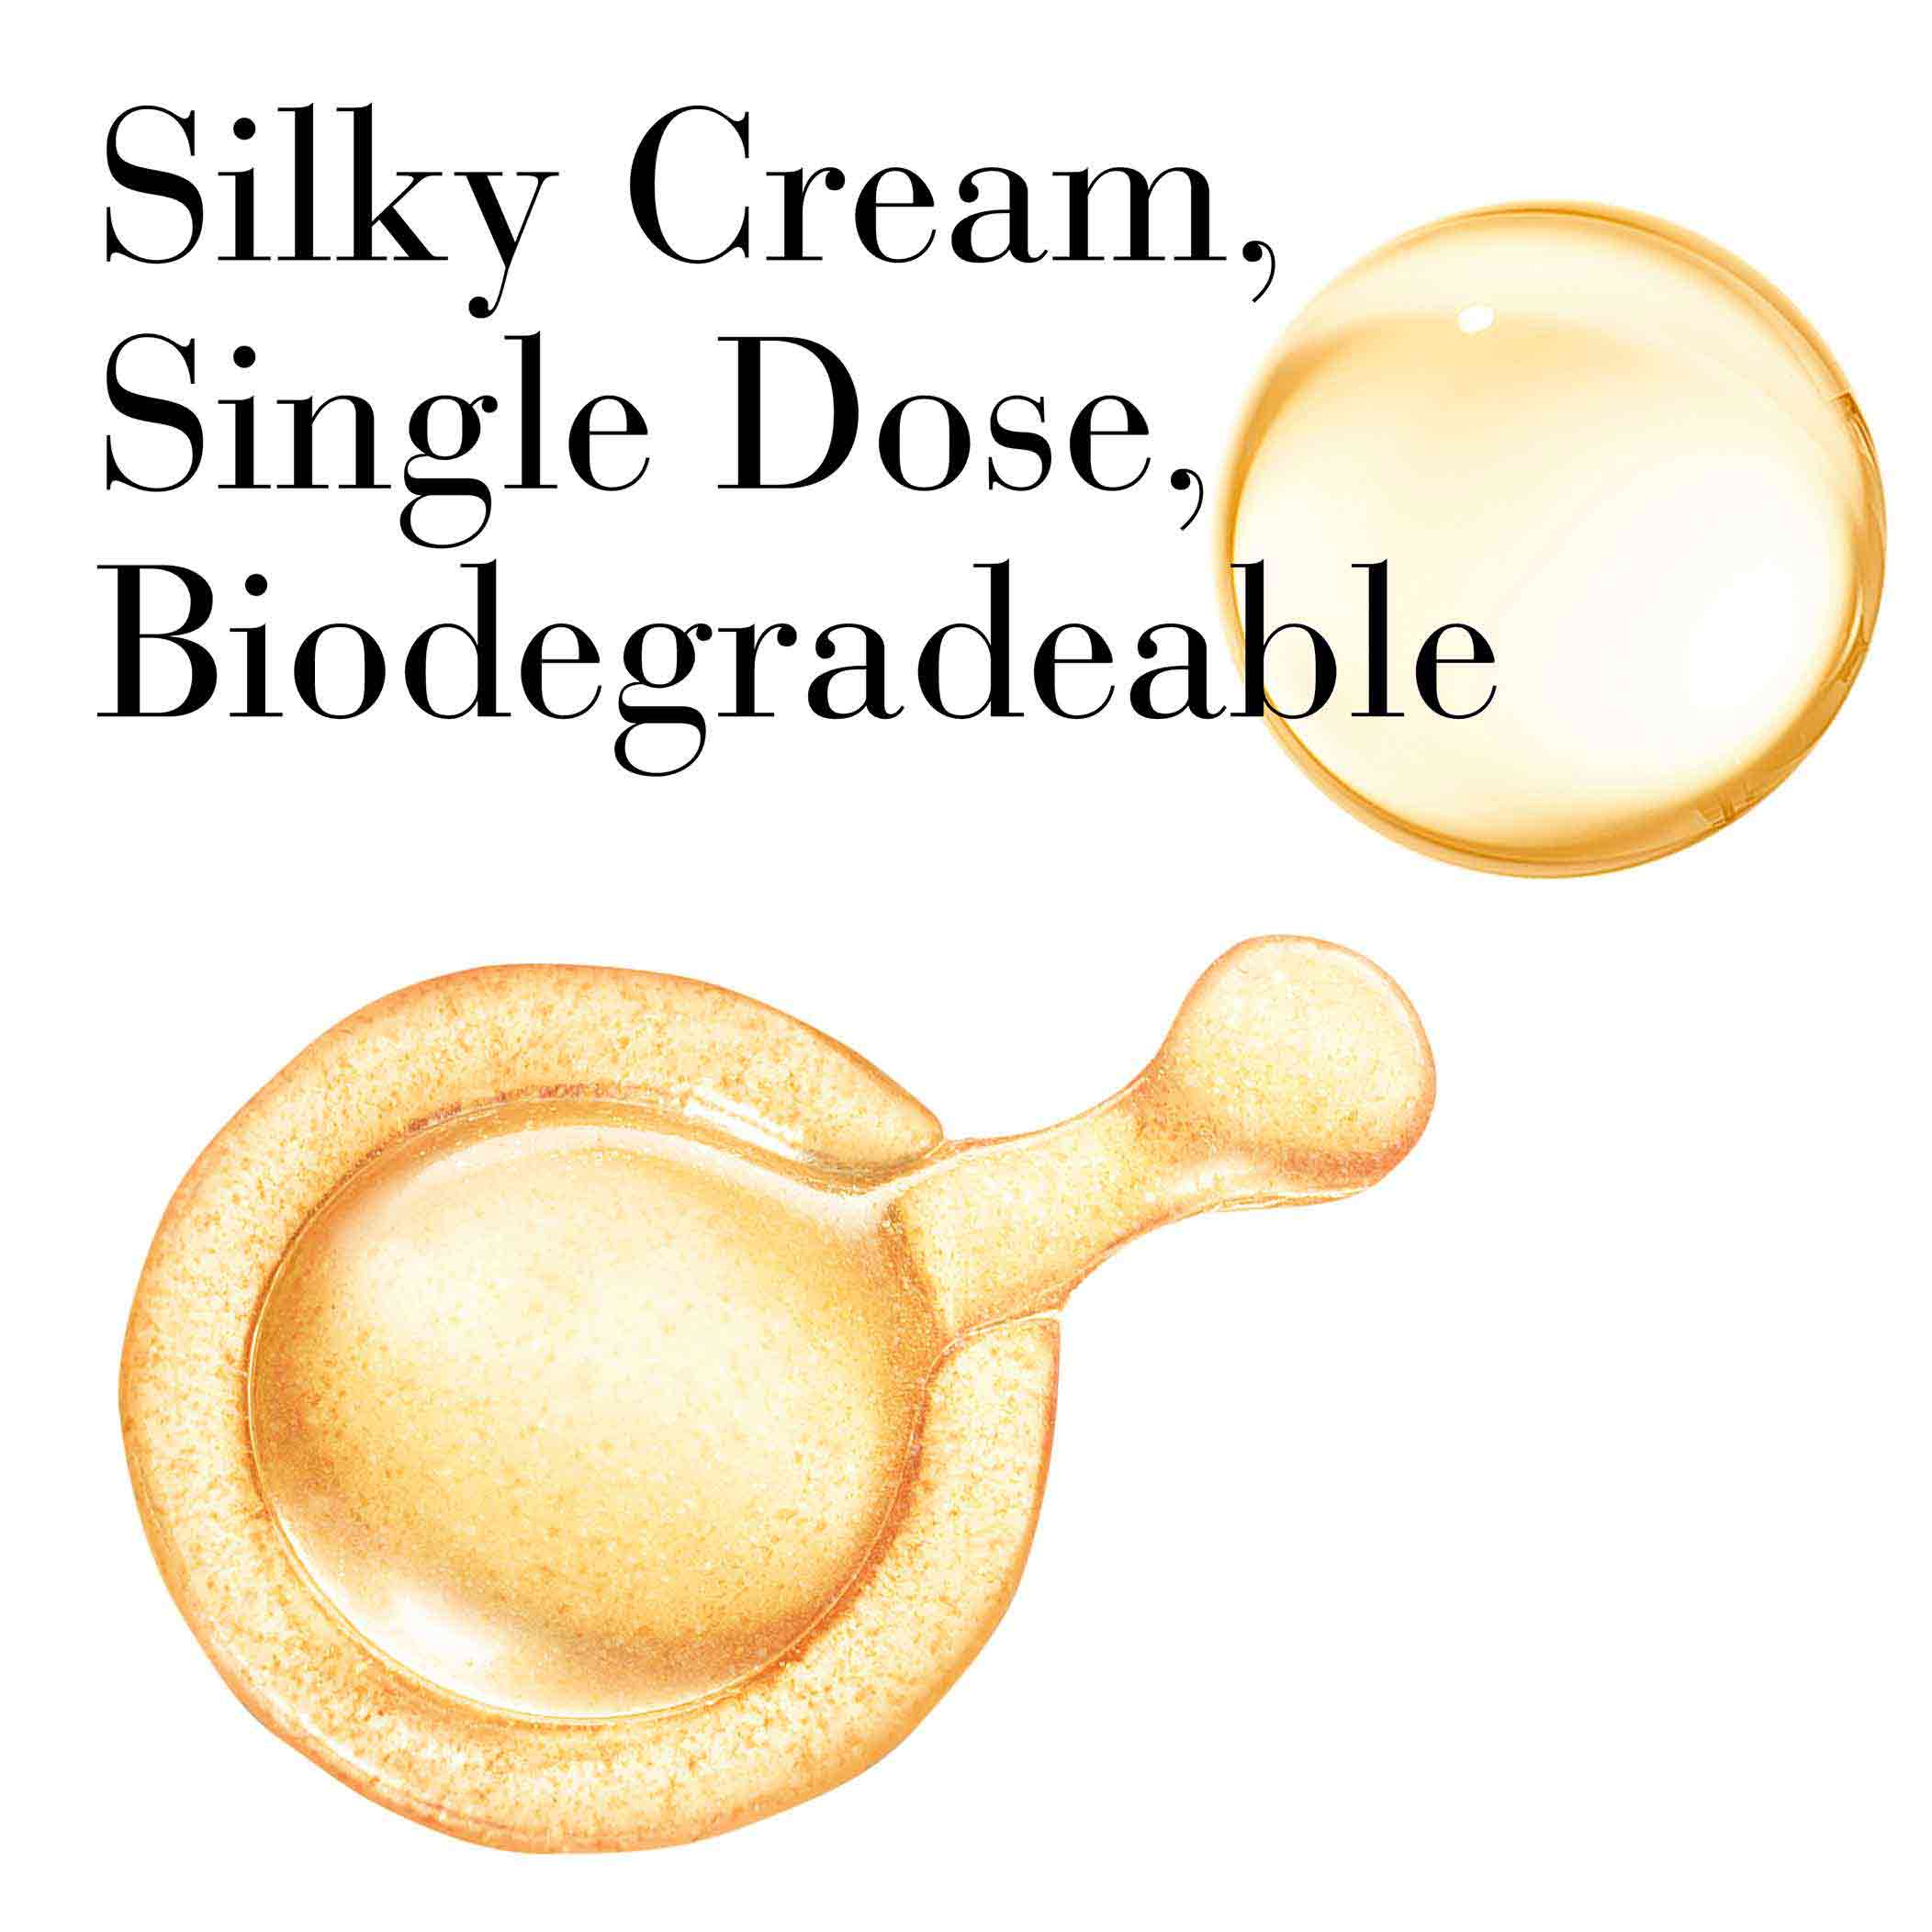 Silky cream, single dose, biodegradable